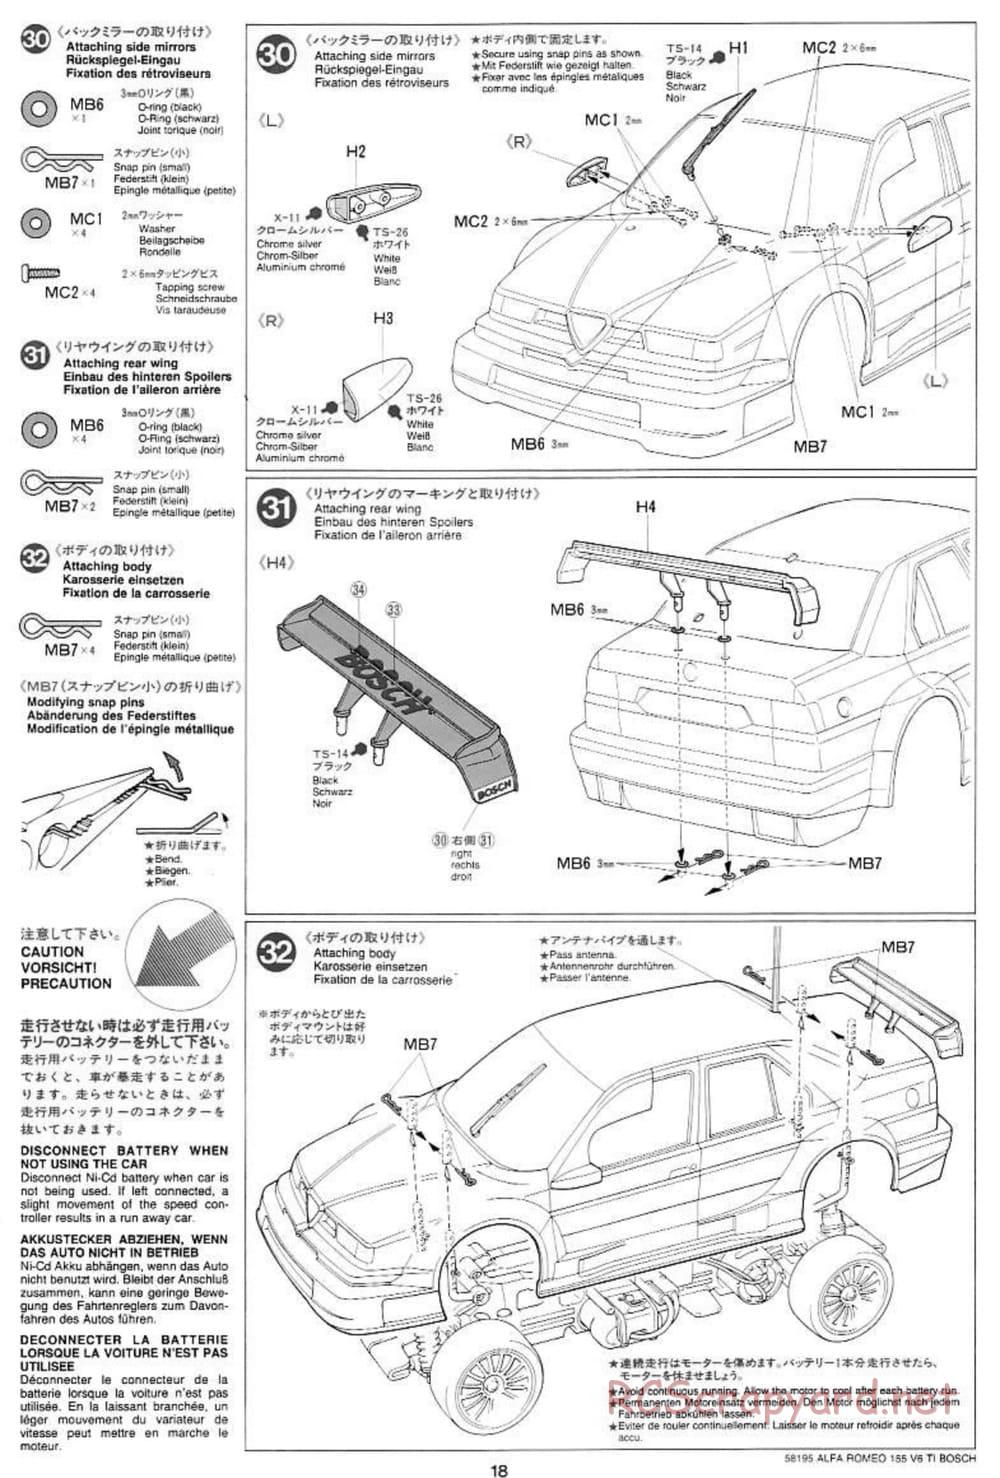 Tamiya - Alfa Romeo 155 V6 TI BOSCH - TL-01 Chassis - Manual - Page 18